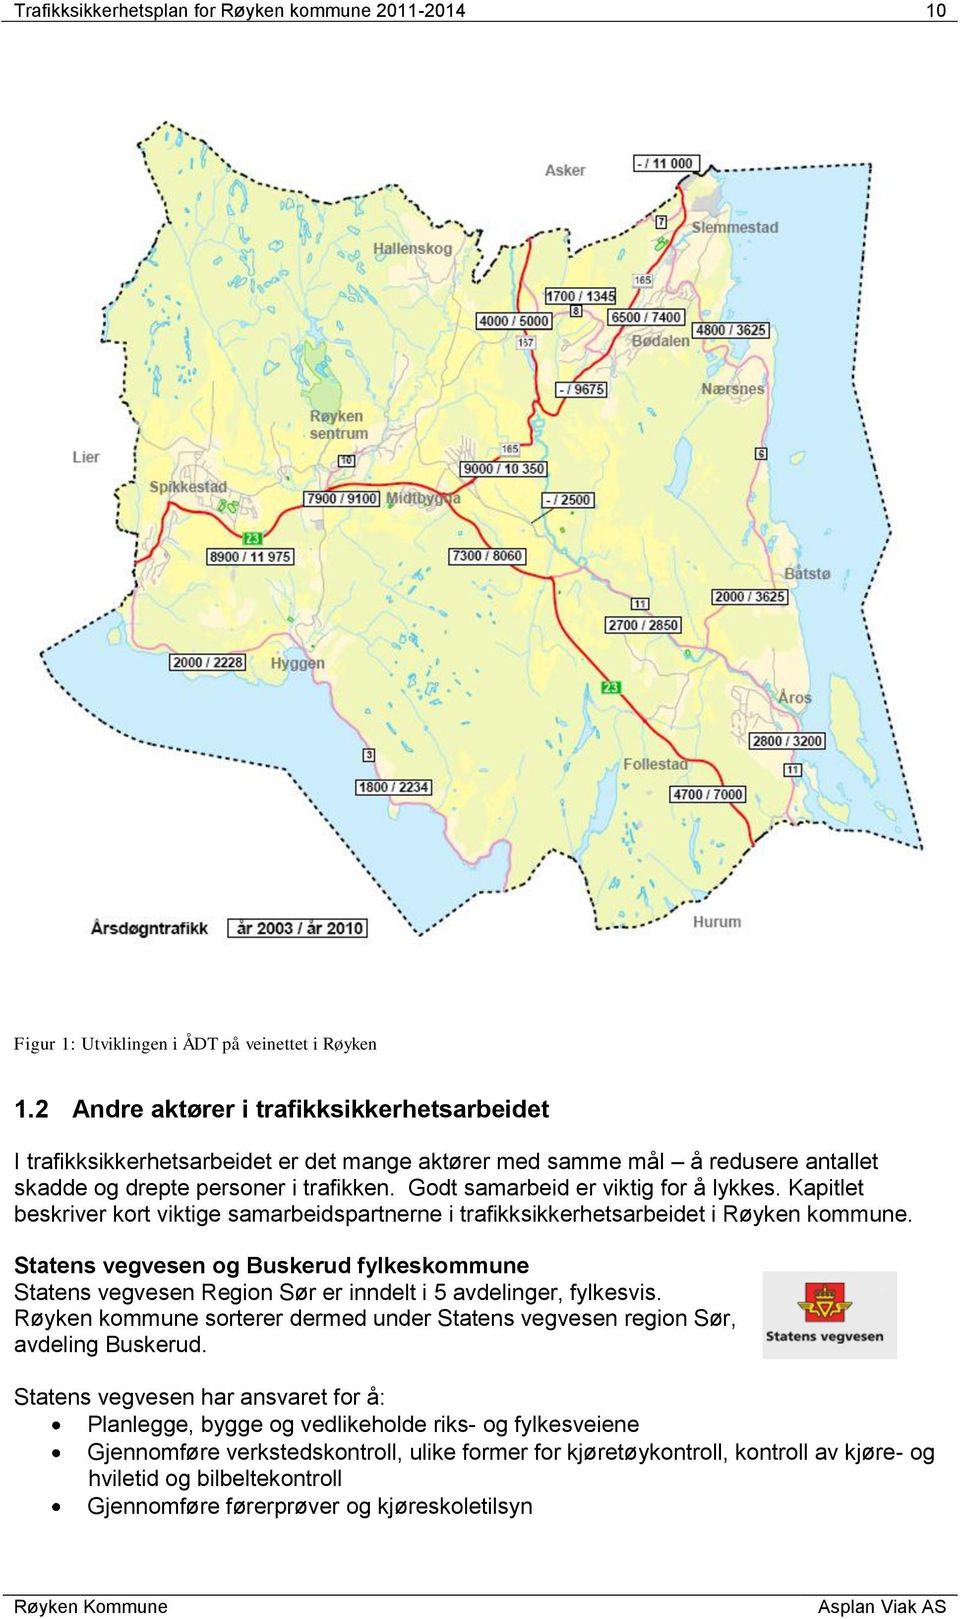 Godt samarbeid er viktig for å lykkes. Kapitlet beskriver kort viktige samarbeidspartnerne i trafikksikkerhetsarbeidet i Røyken kommune.